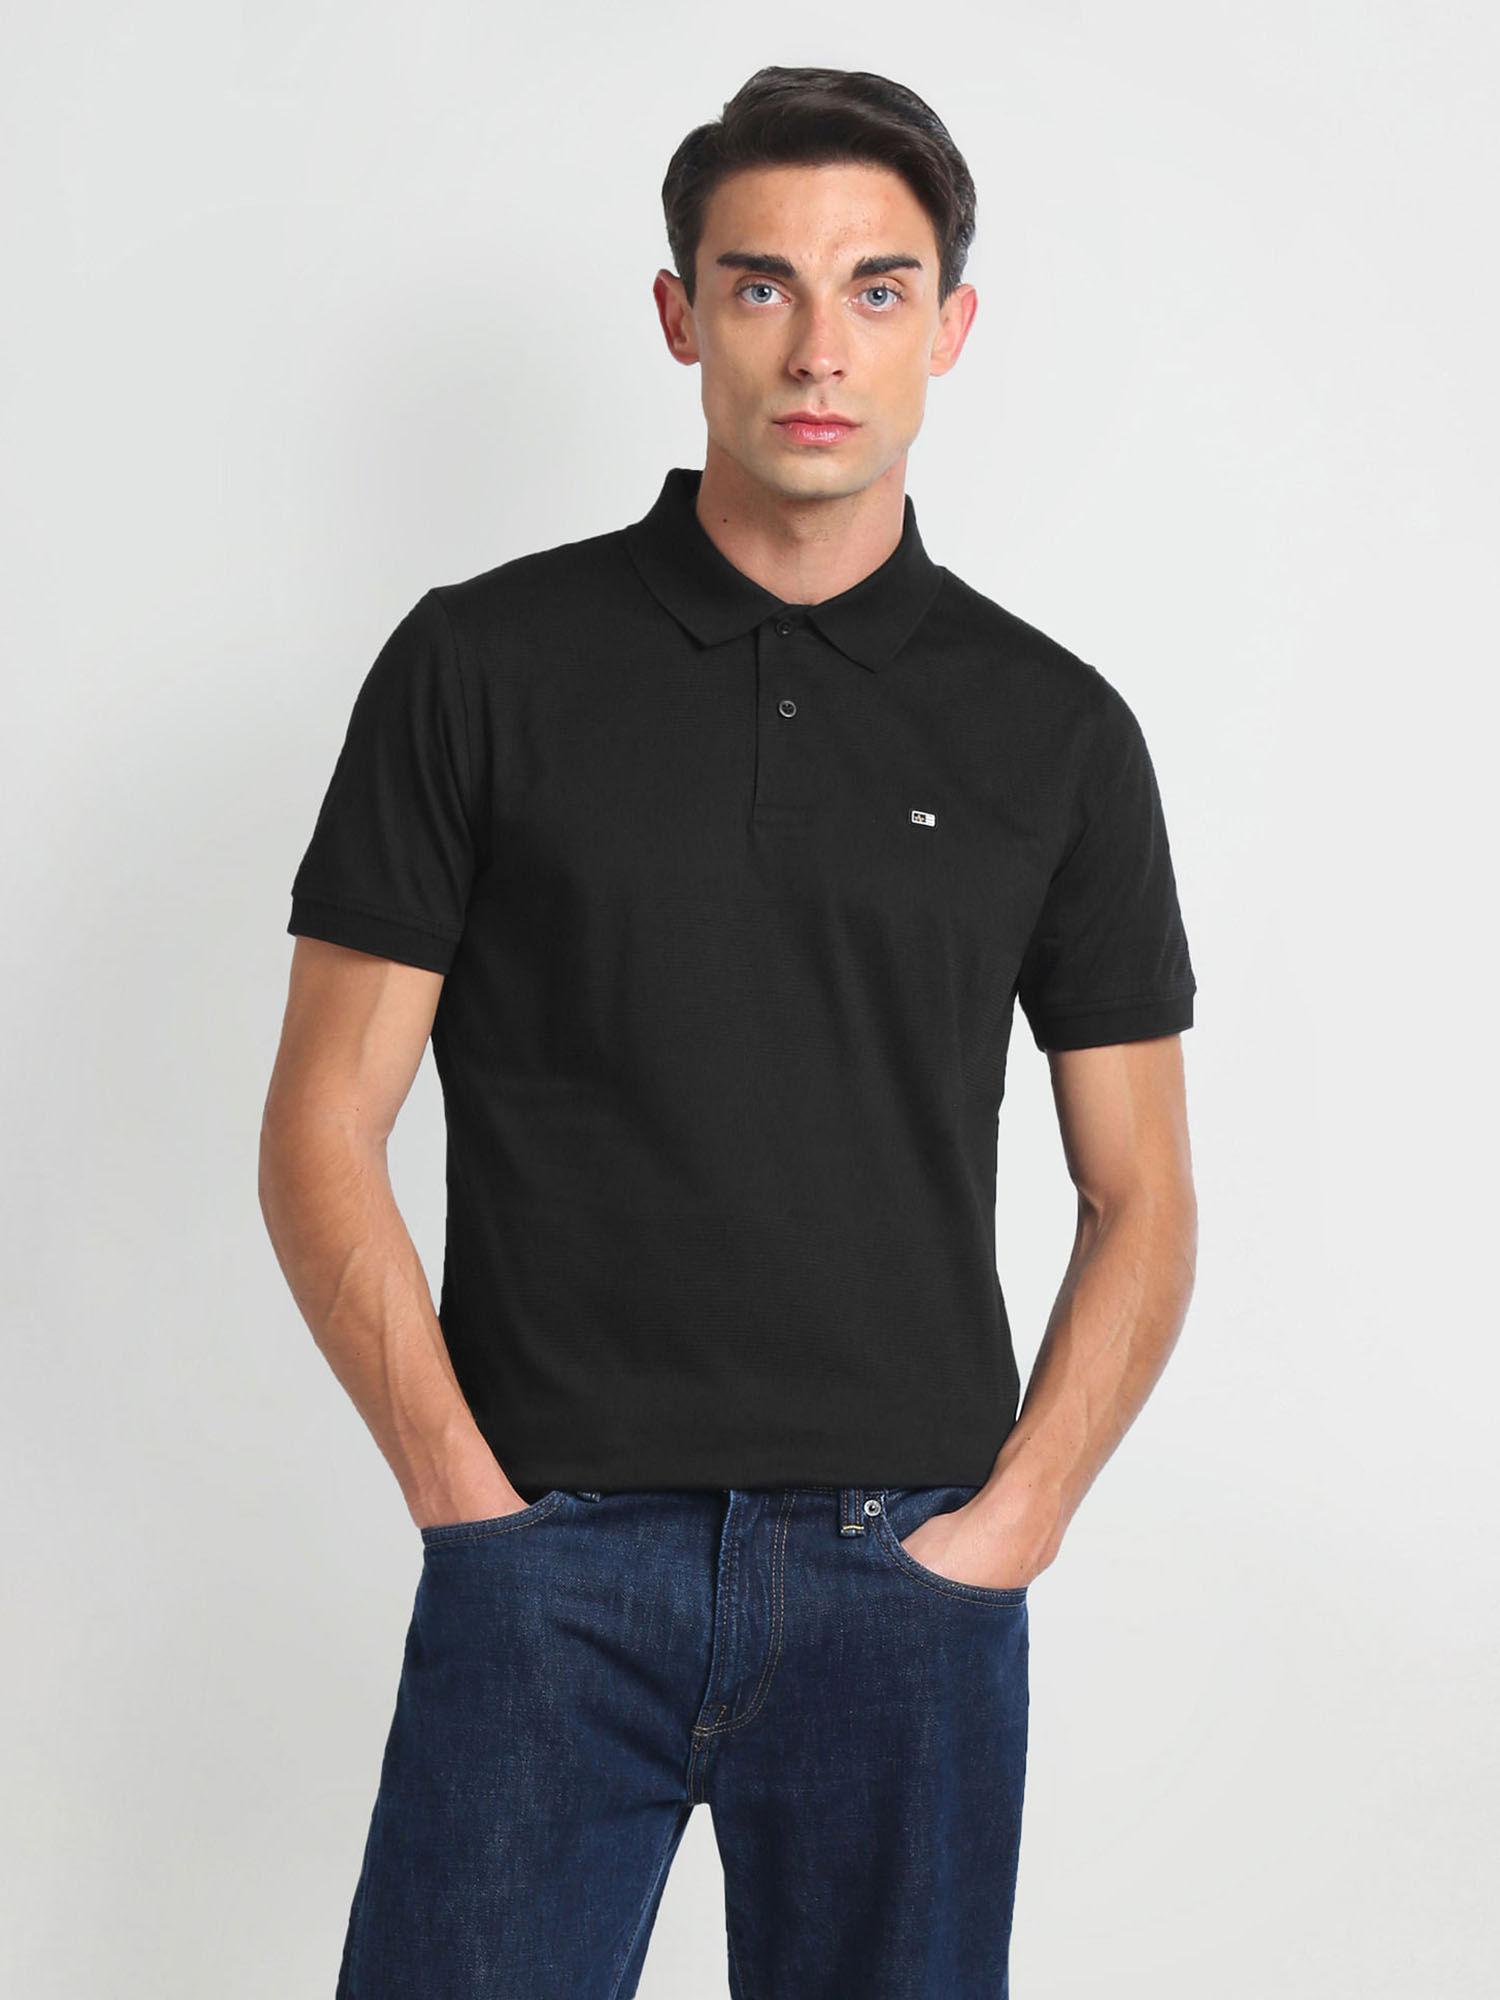 black mercerised cotton polo t-shirt